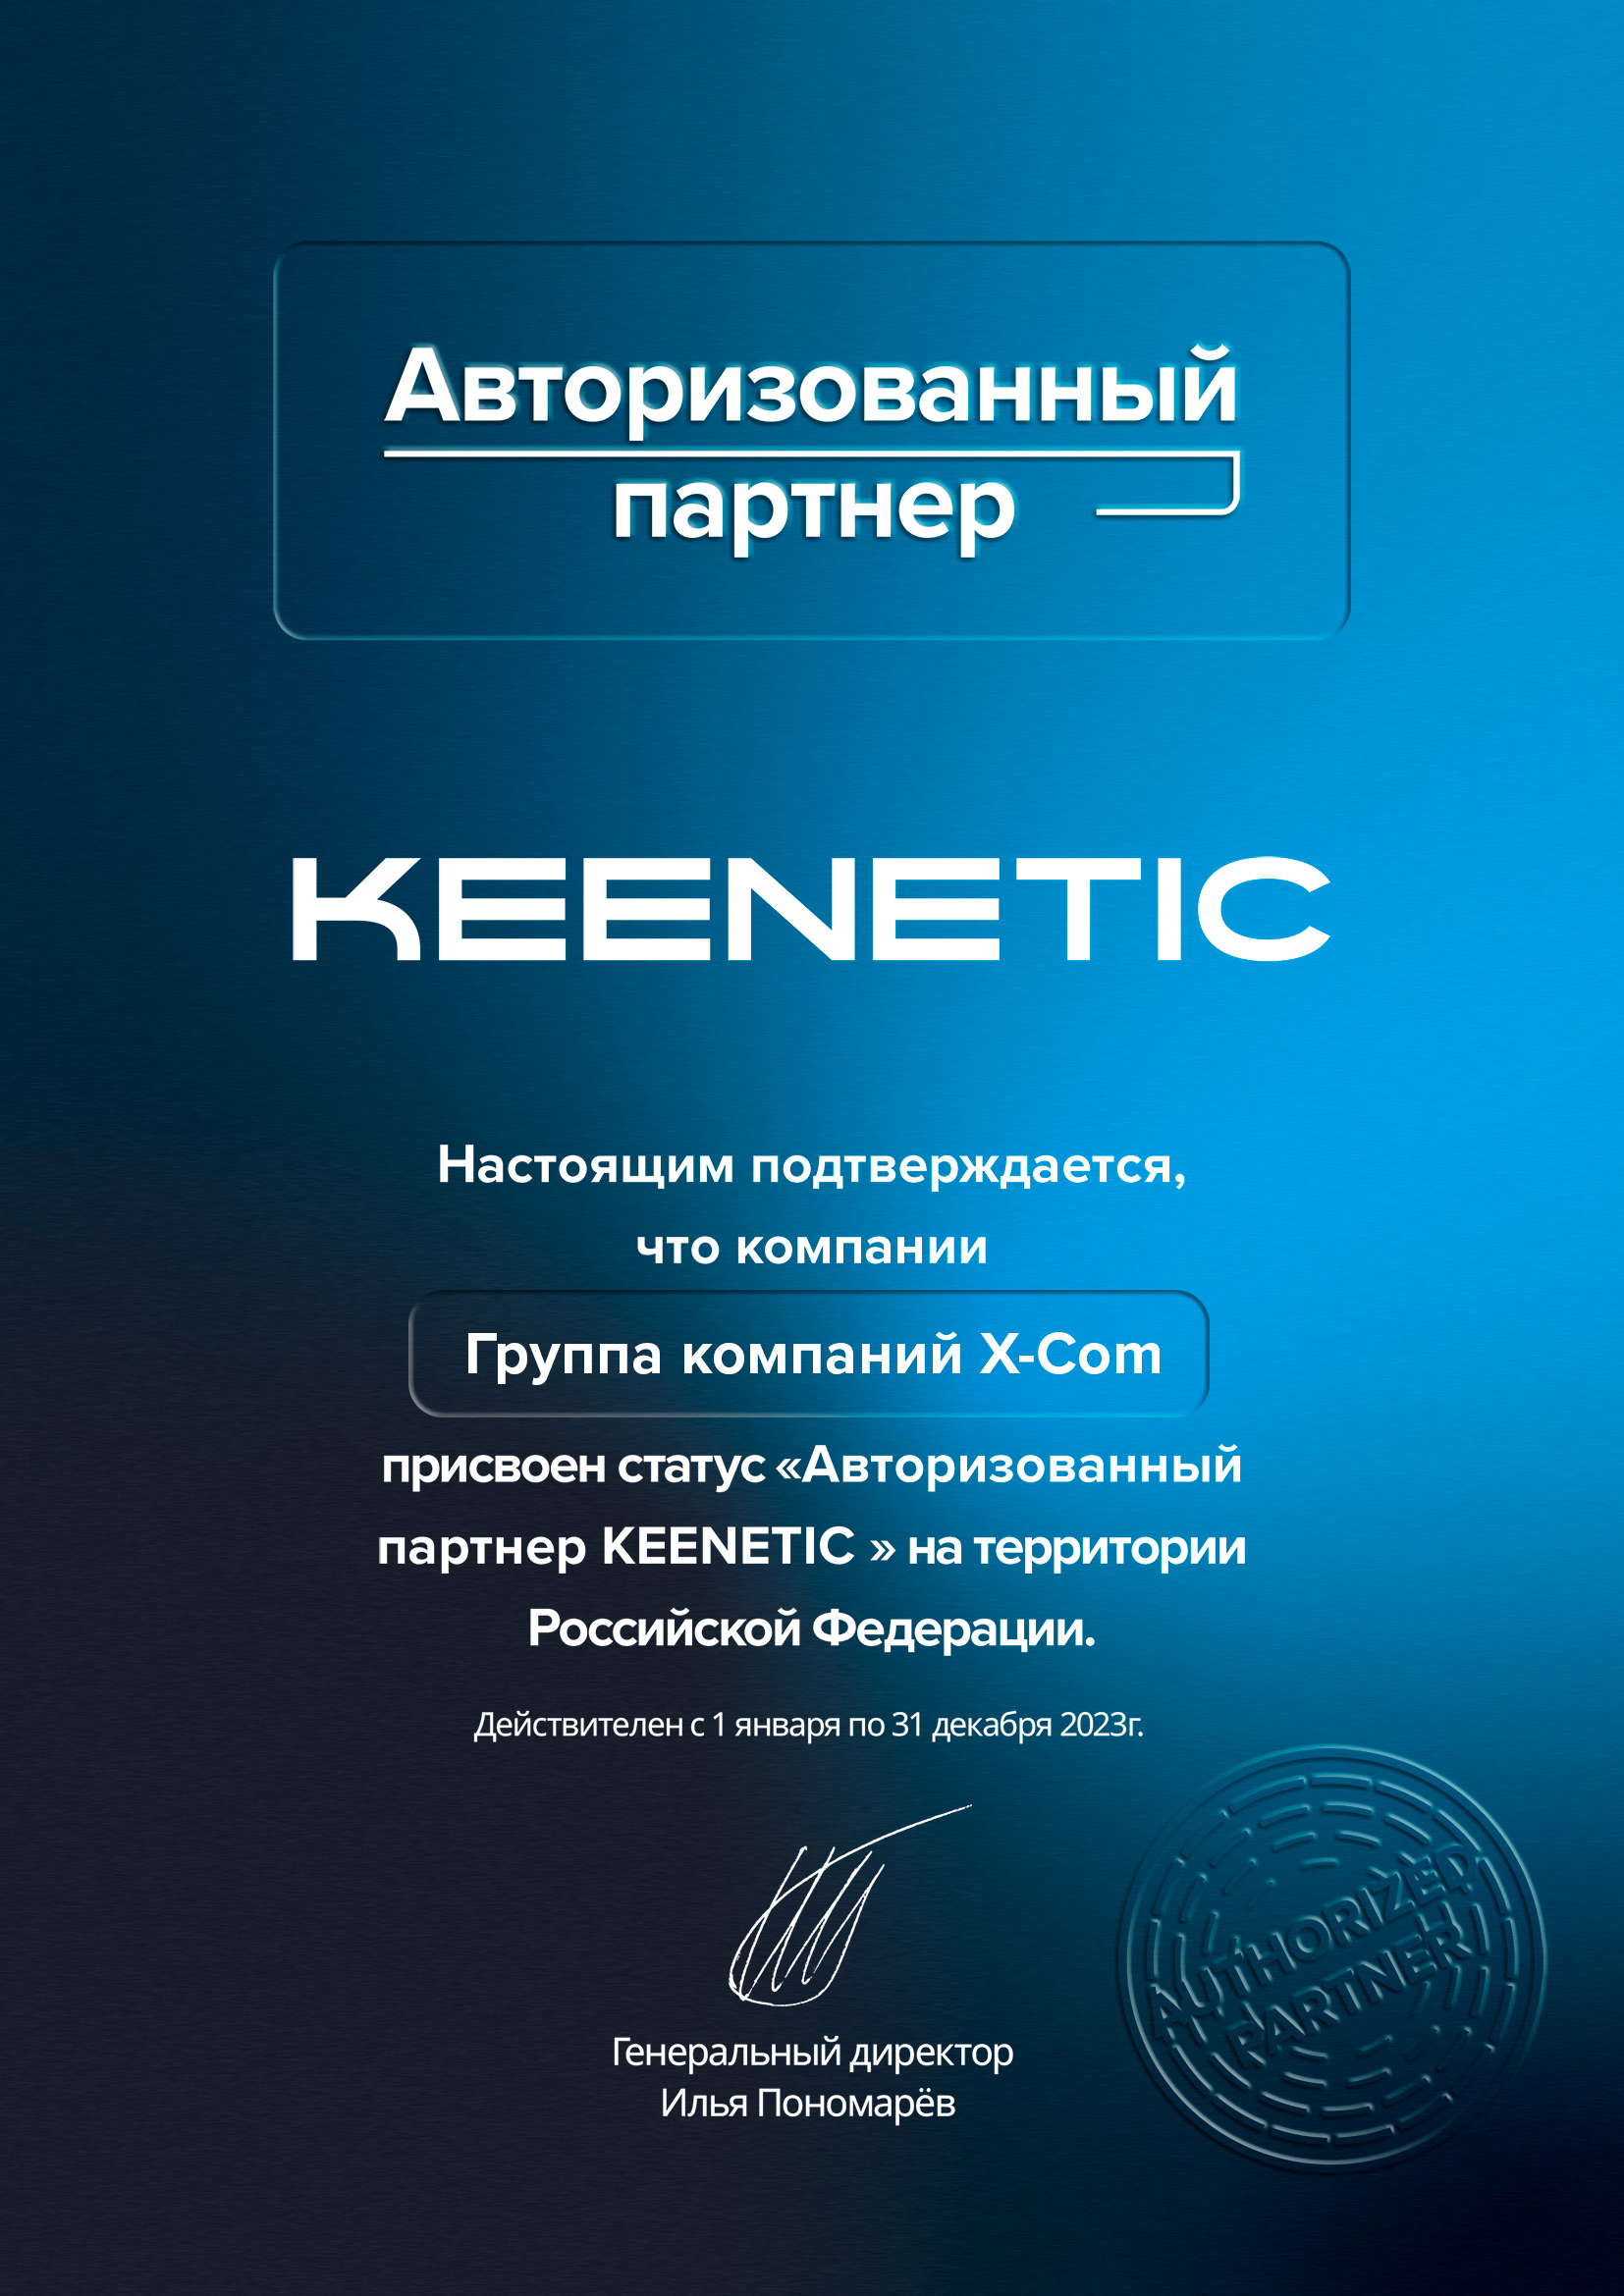 Группа компаний X-Com подтвердила статус «Авторизованный партнер KEENETIC» на территории Российской Федерации